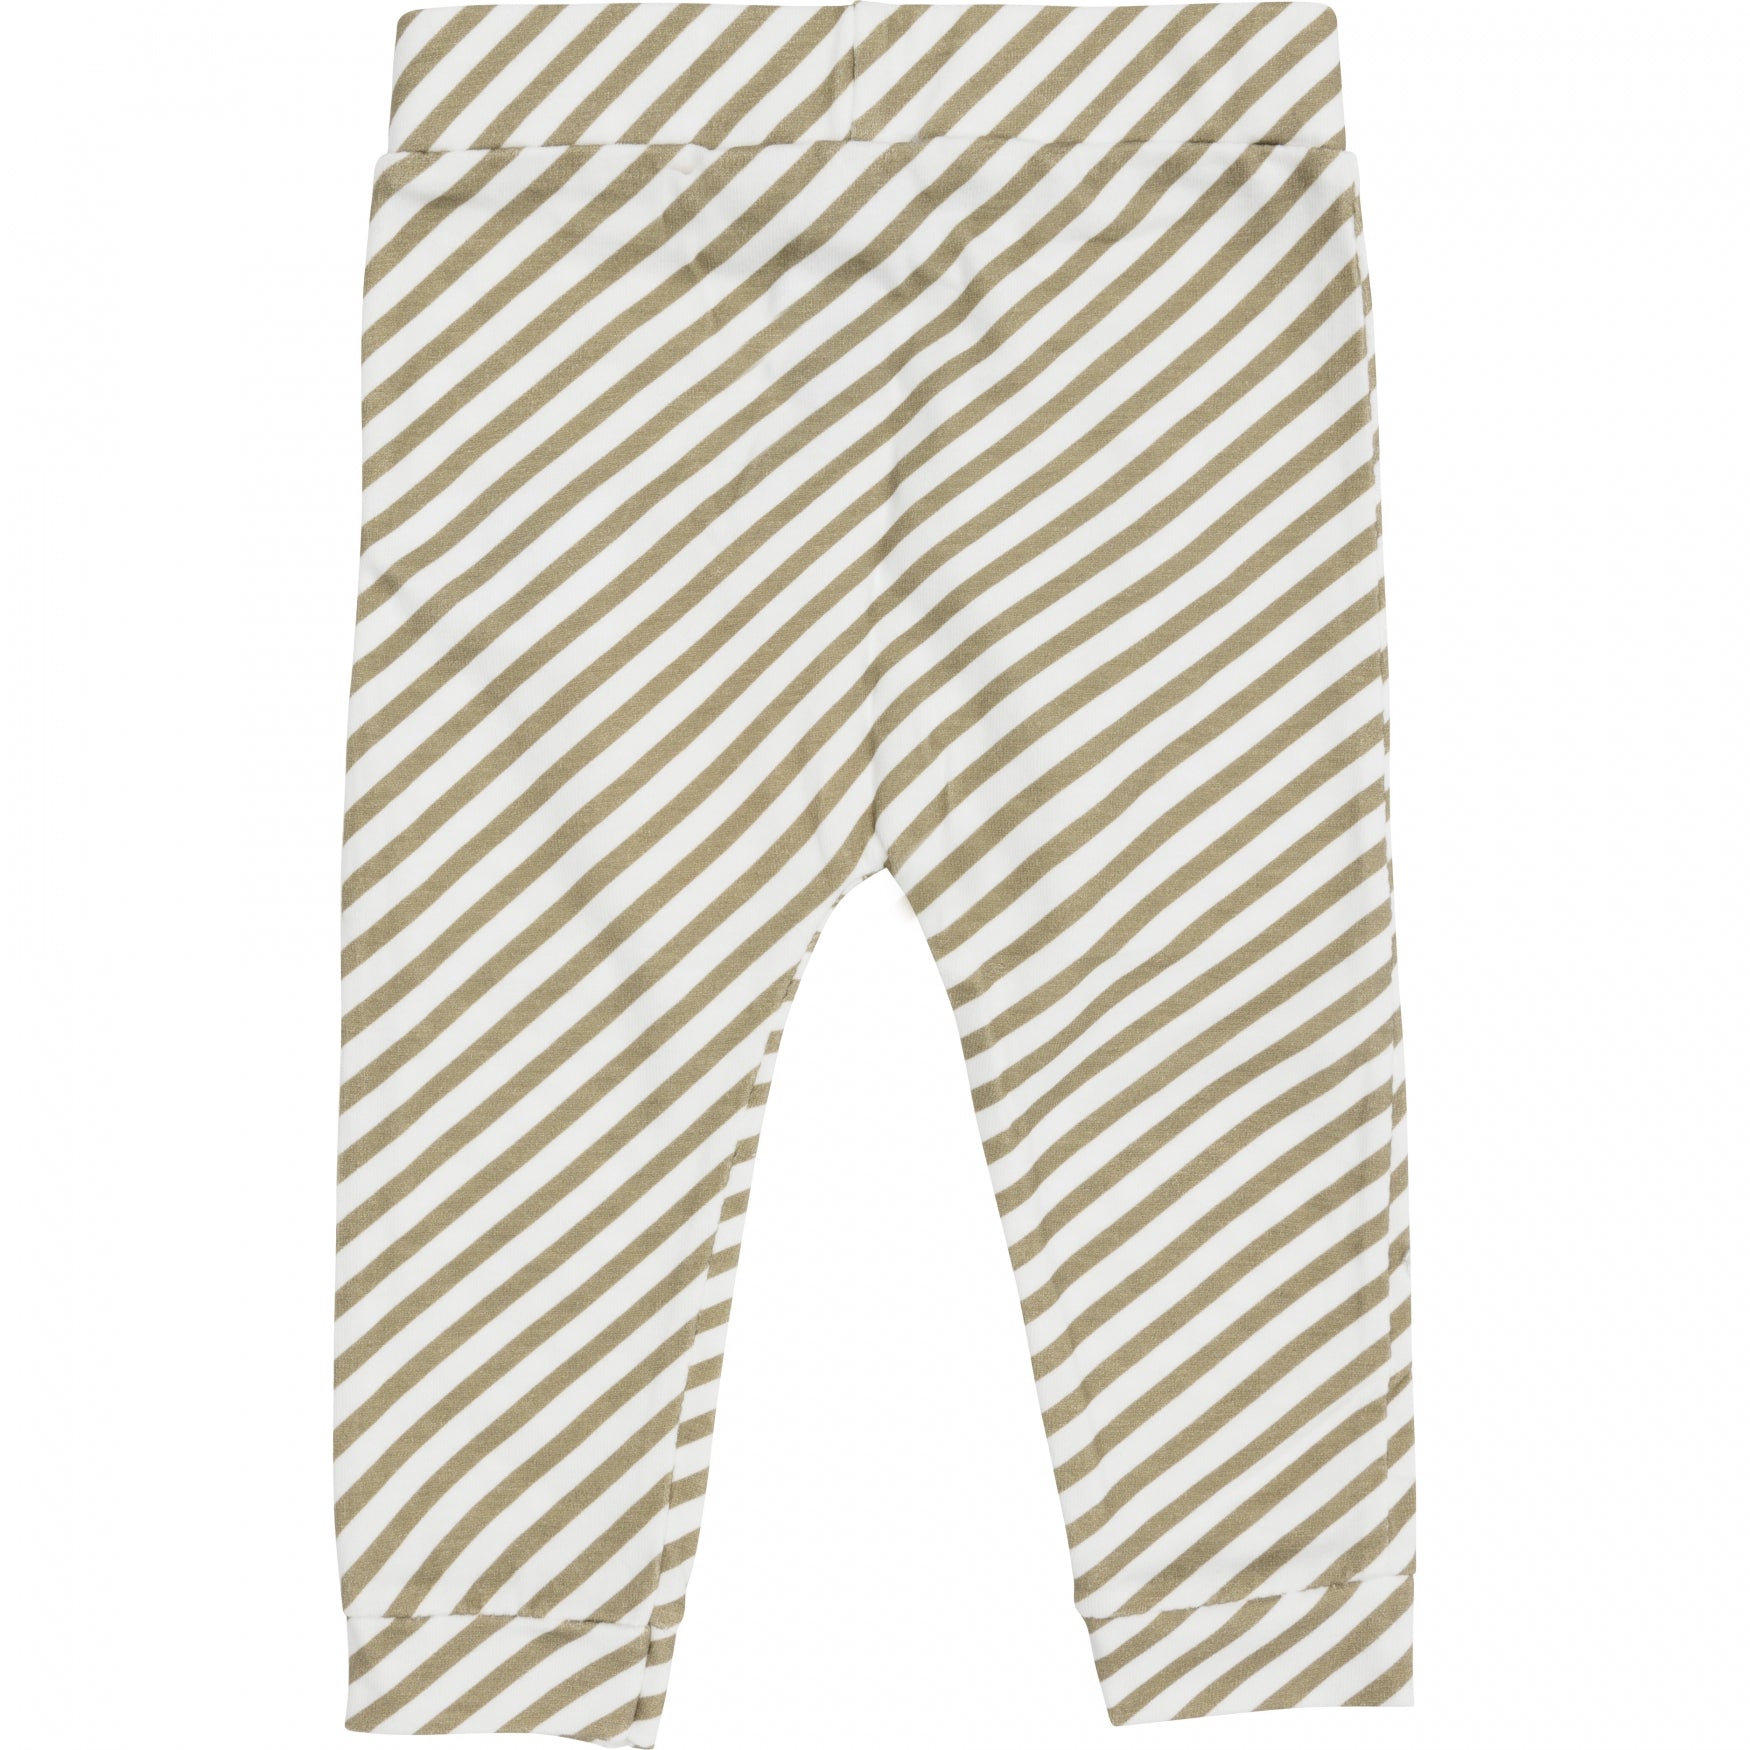 Jongens Trouser van Klein Baby in de kleur Stripe Off White/Twill in maat 86.